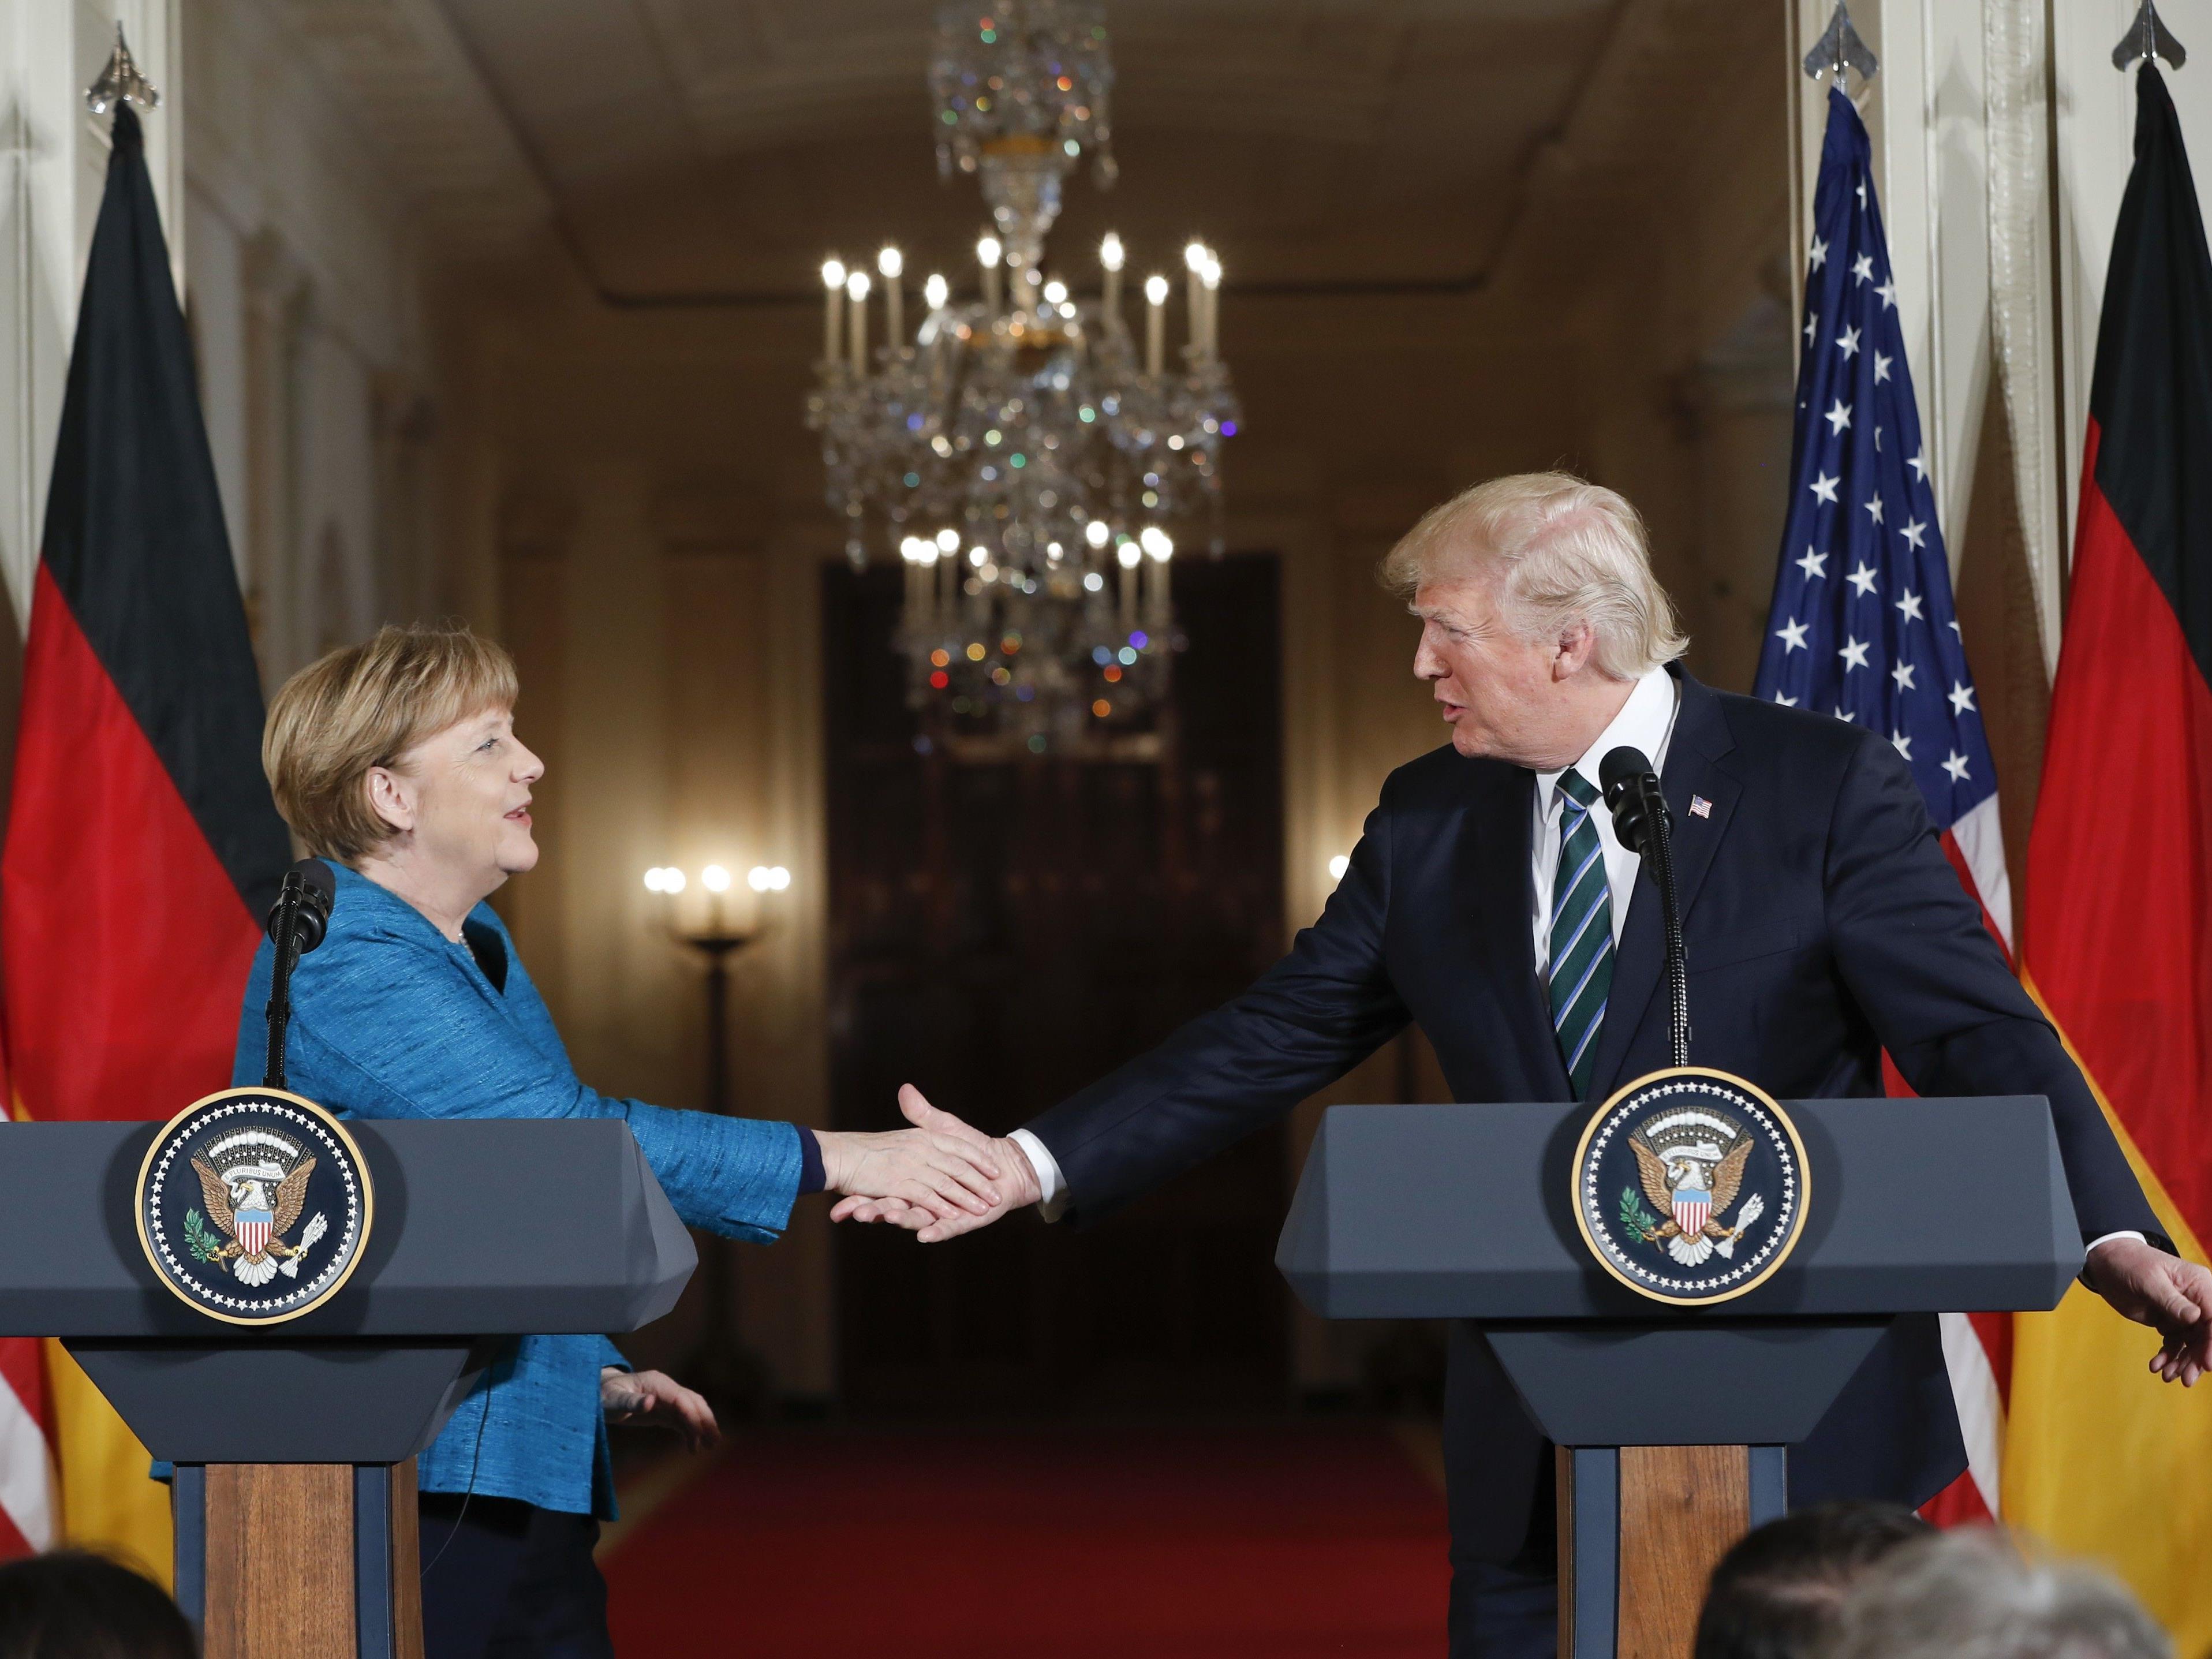 US-Präsident Donald Trump hat beim Besuch von Bundeskanzlerin Angela Merkel seine harte Linie in Fragen der Einwanderung unterstrichen.